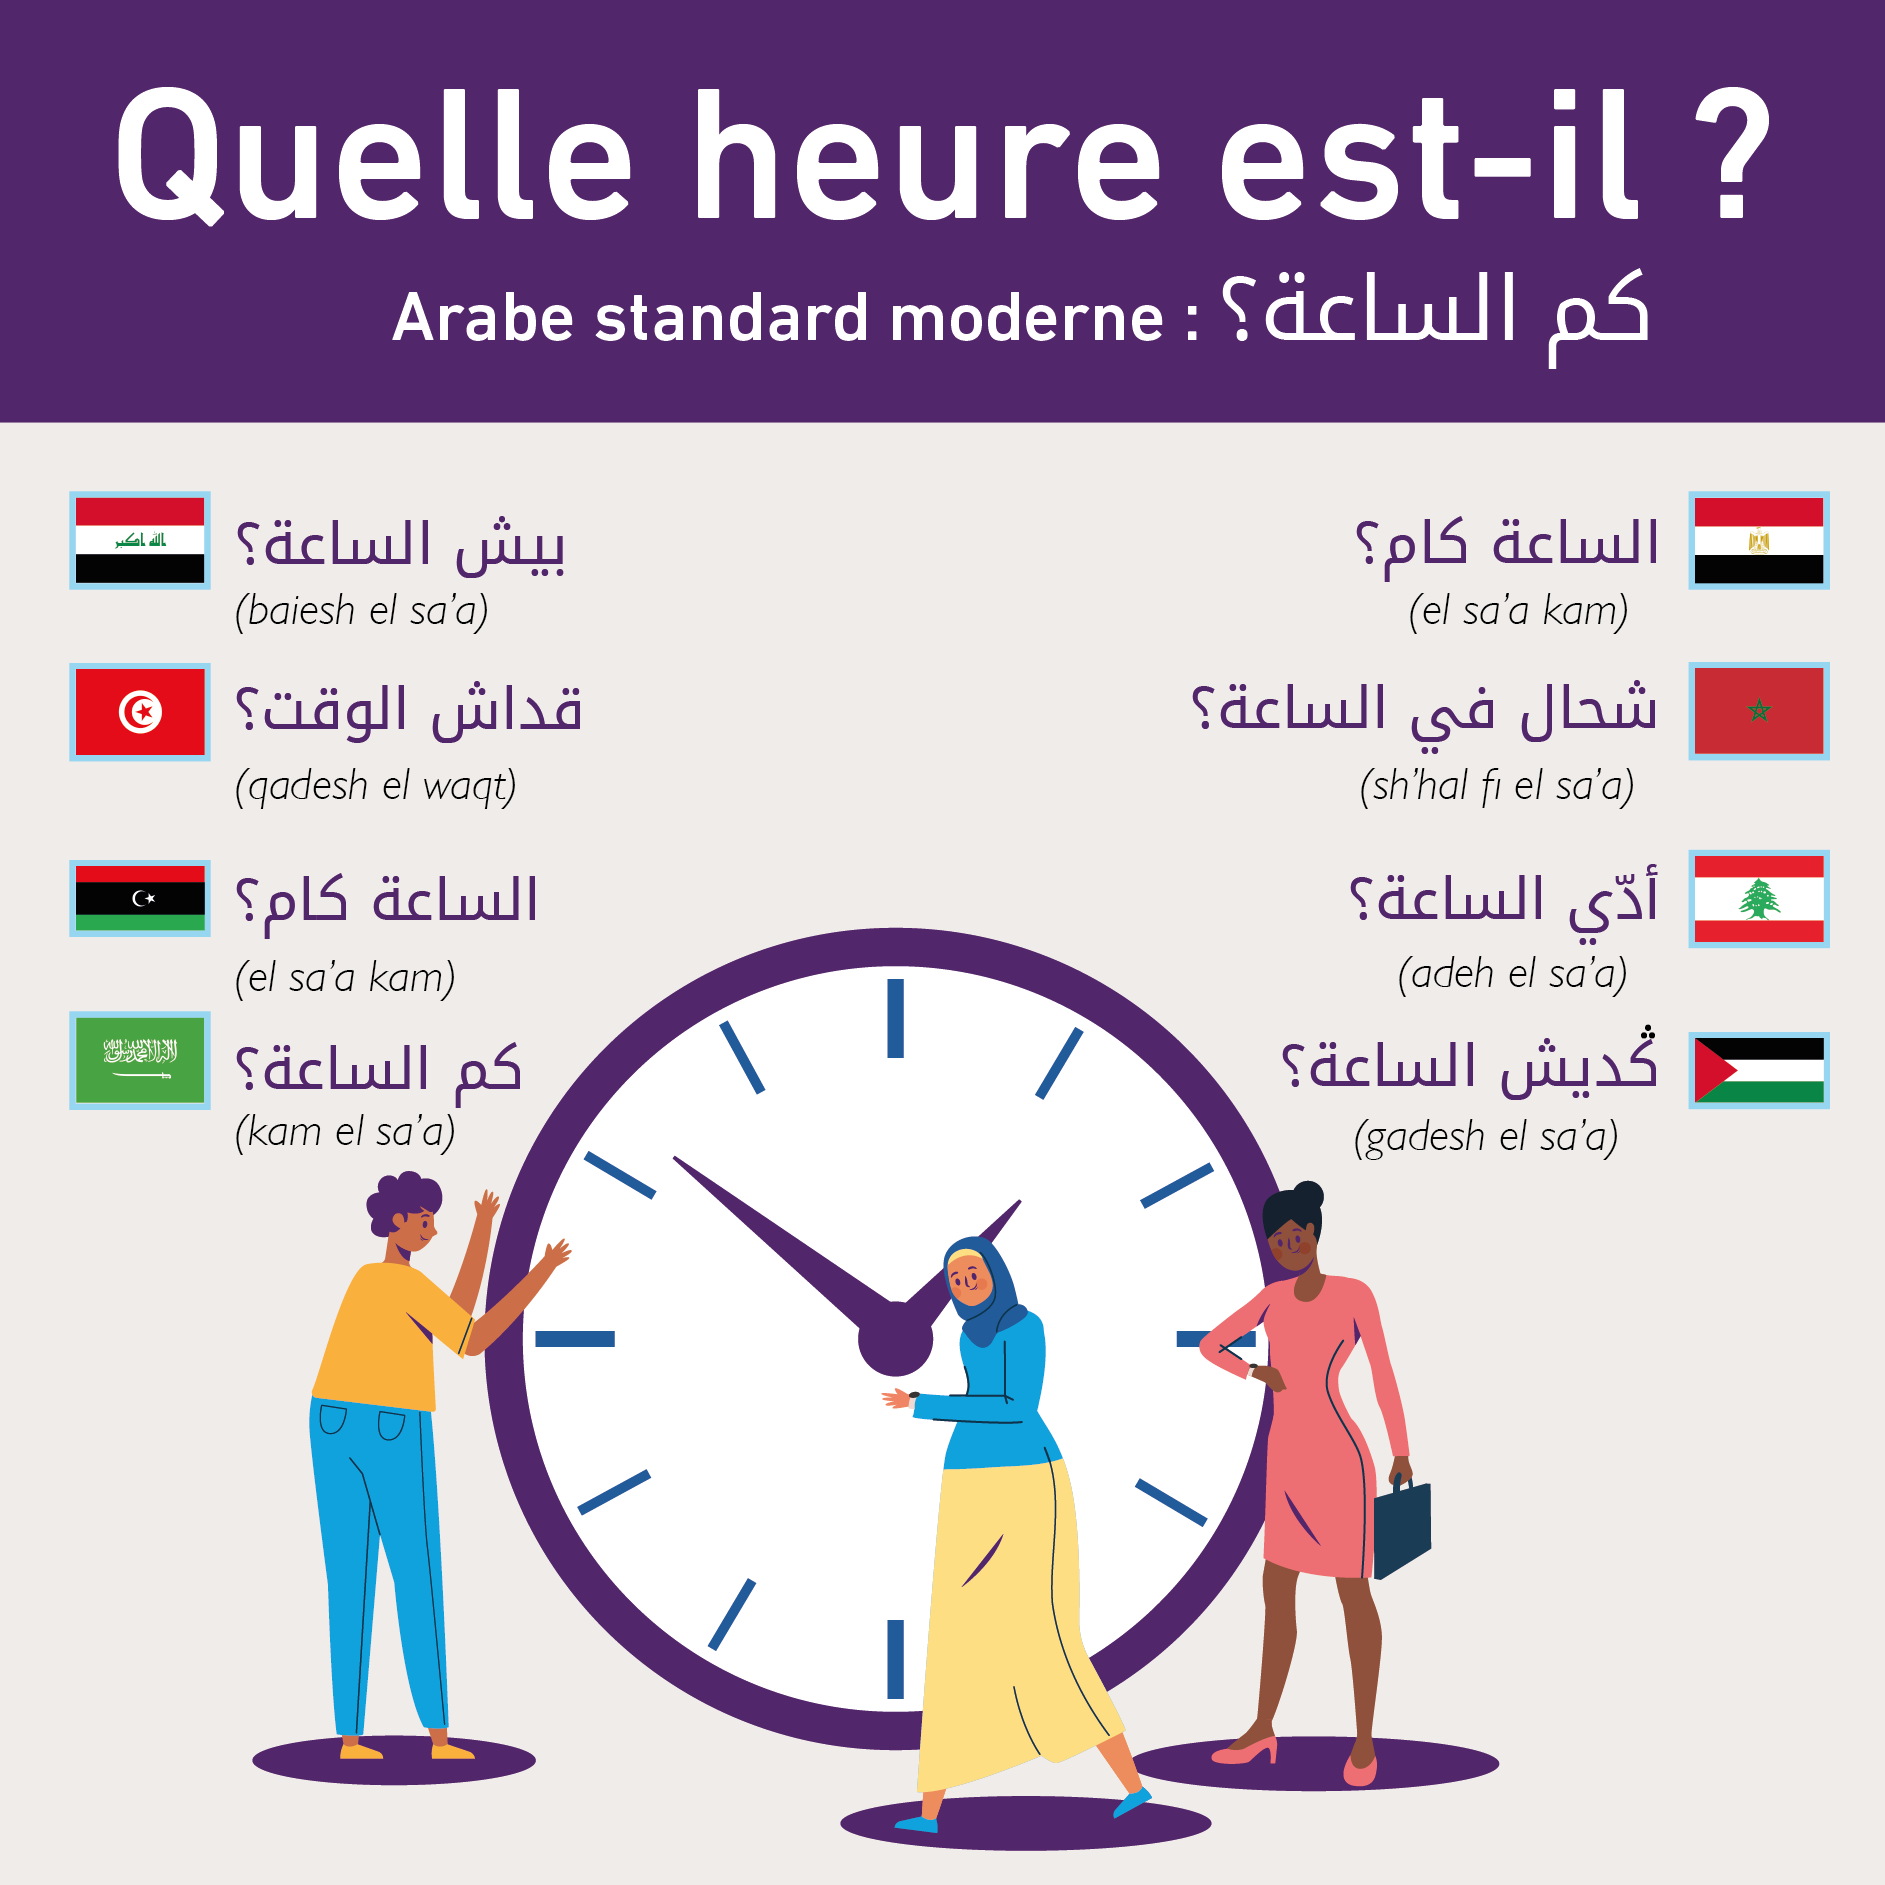 Les dialectes arabes varient dans la région du Moyen-Orient et d’Afrique du Nord (Yasmina Allouche/illustration MEE)